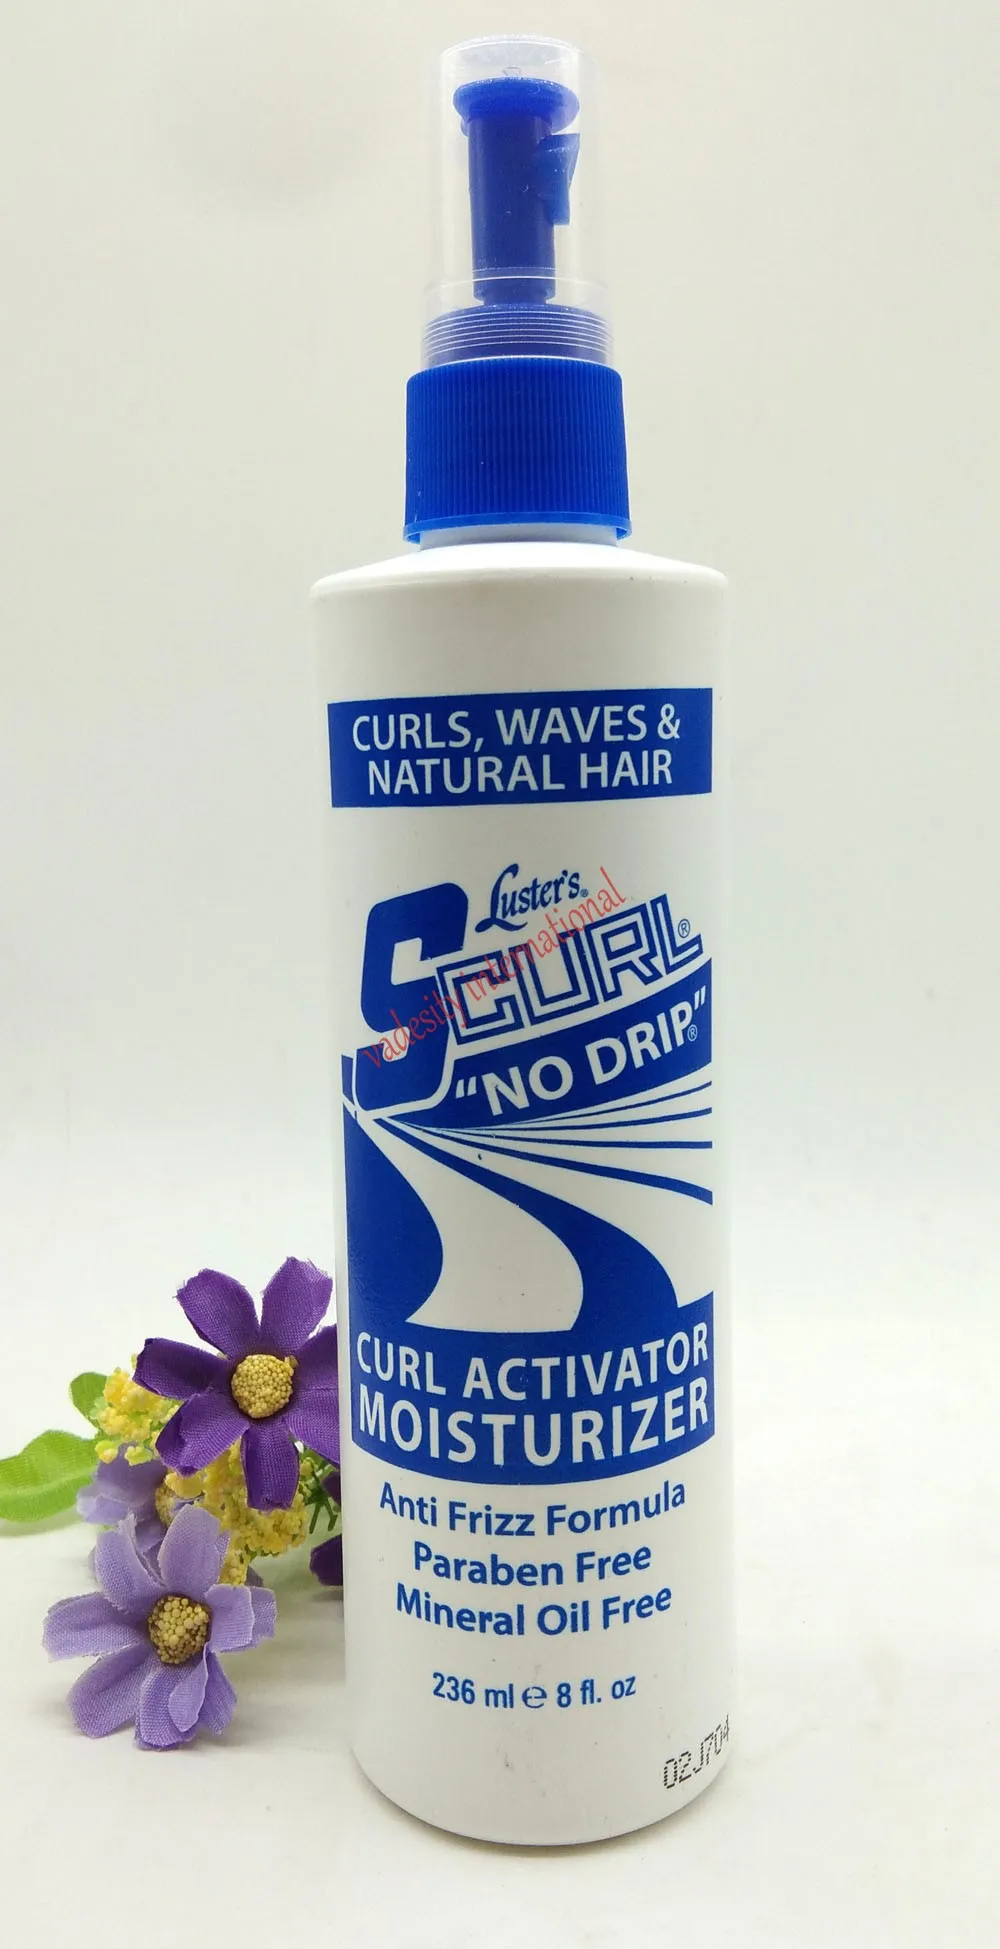 

Luster s-curl no drip activator moisturizer spray 236ml